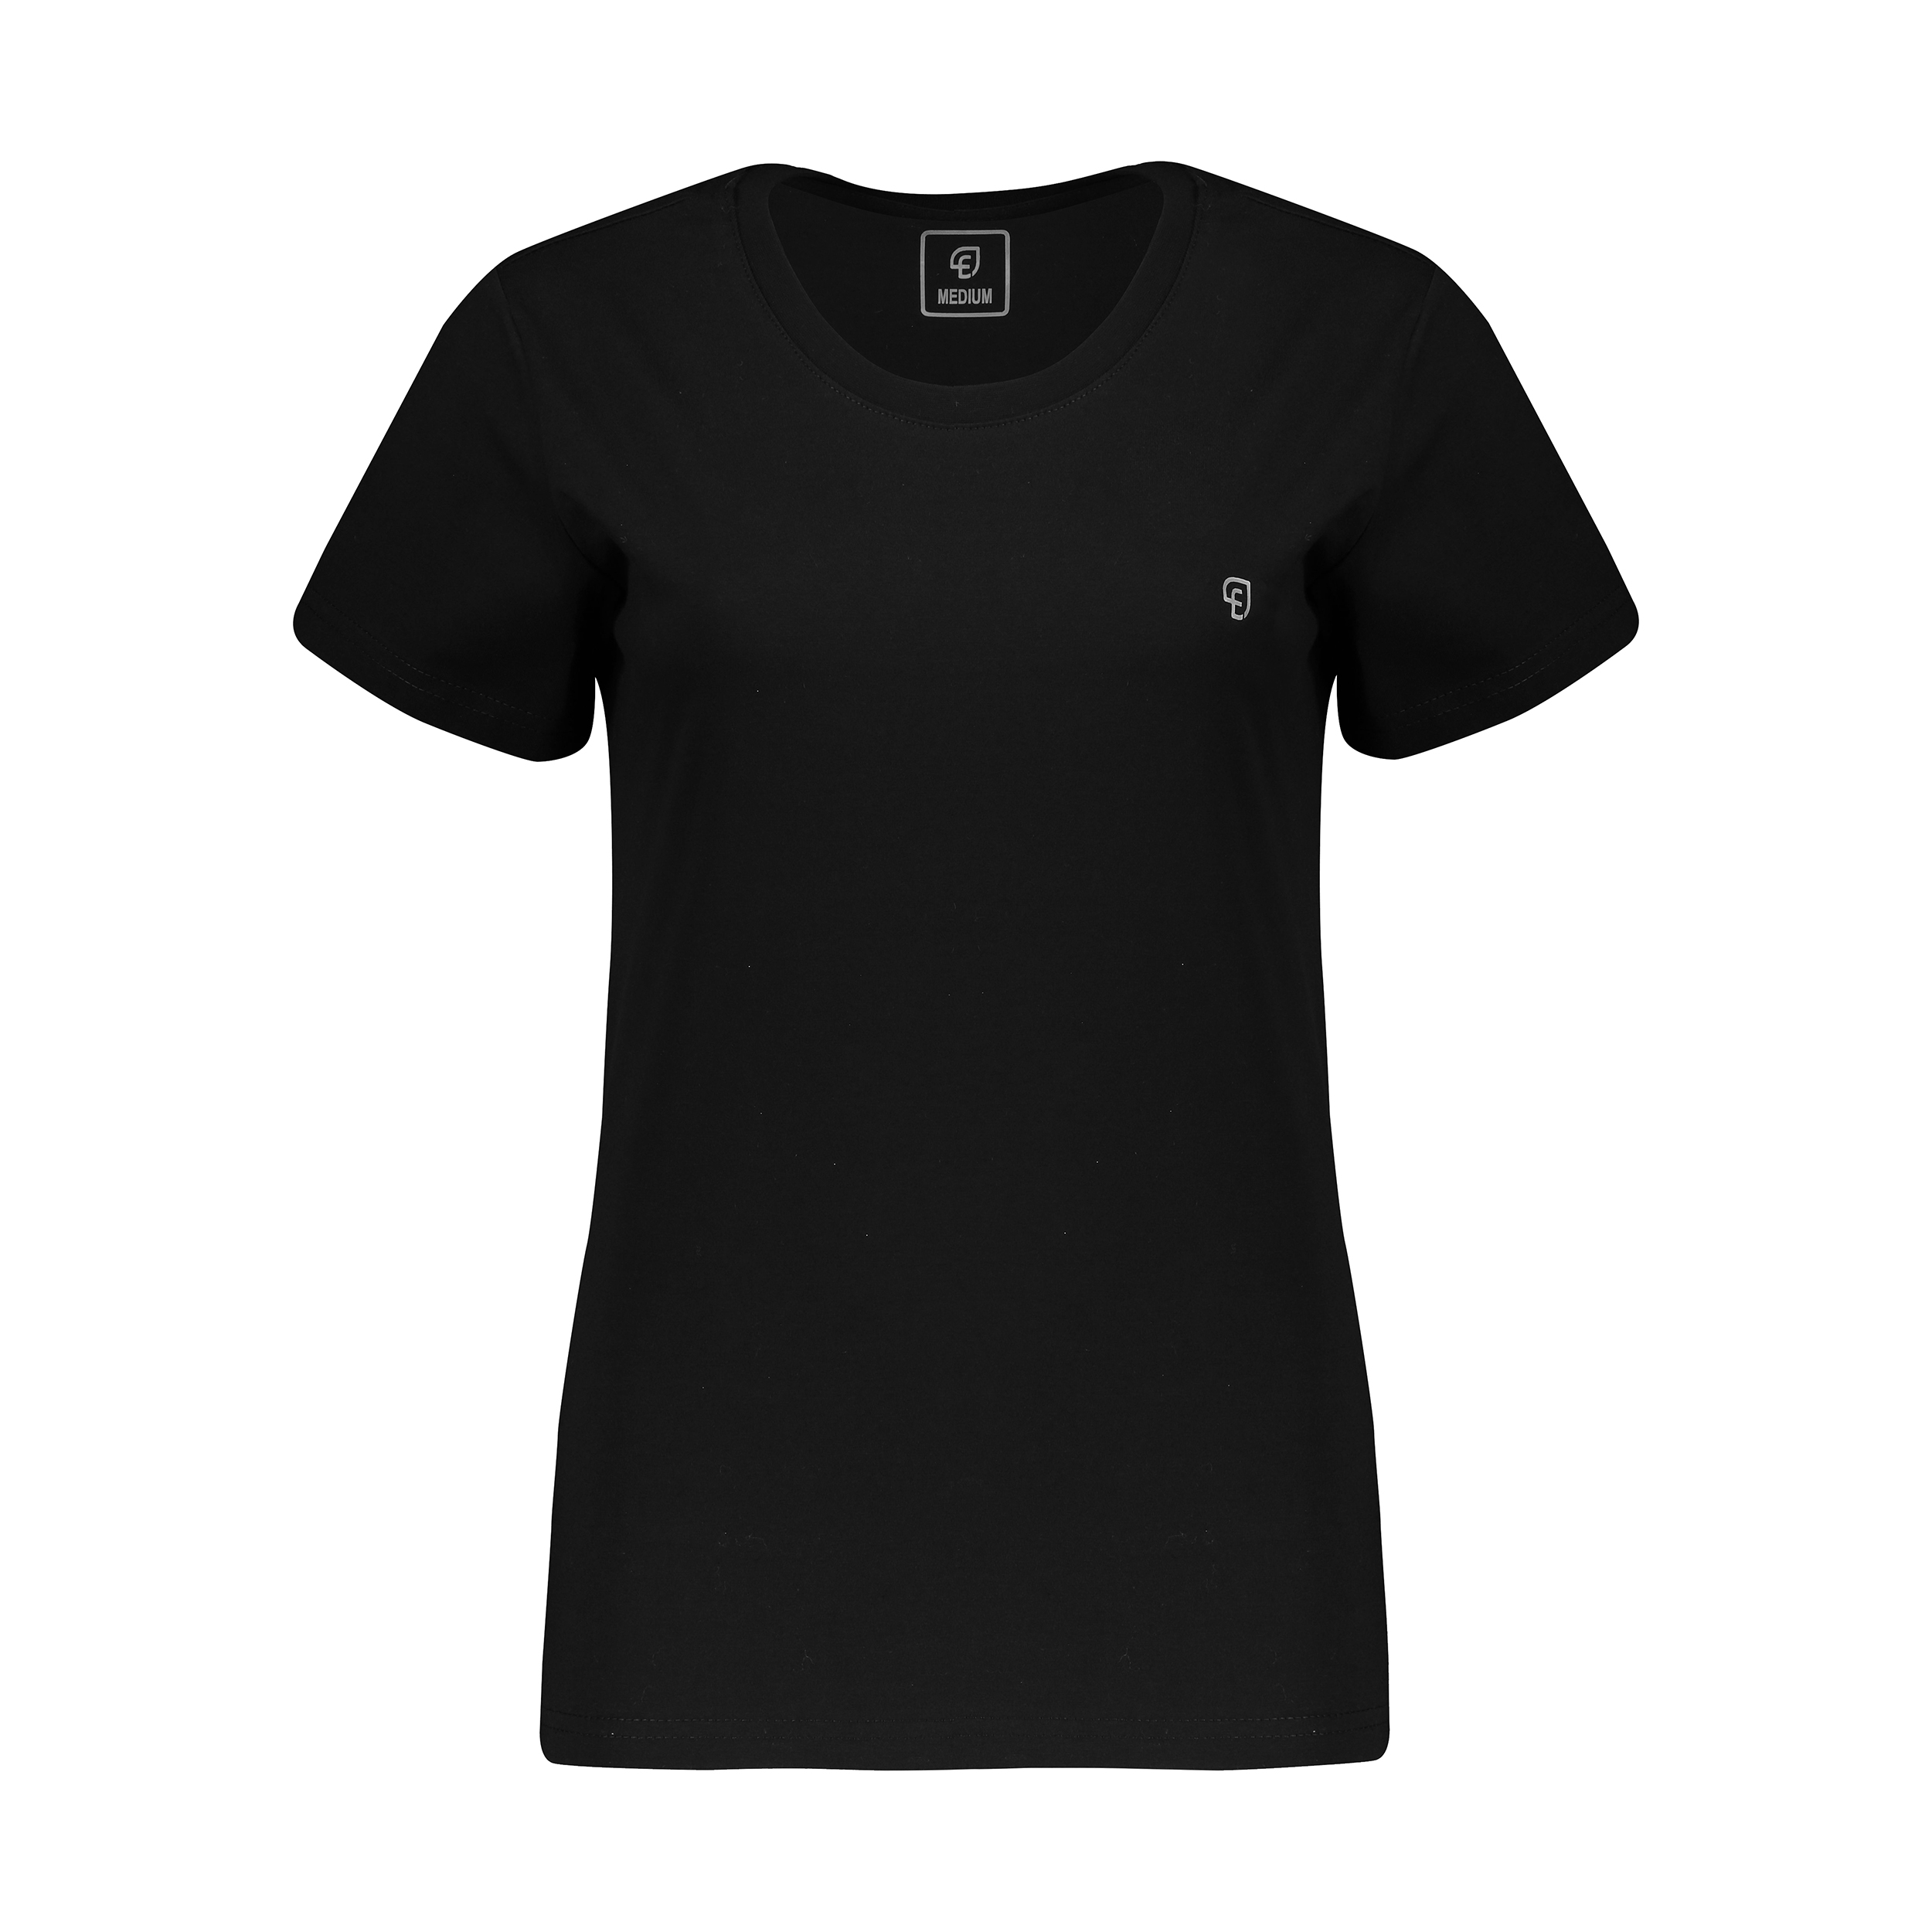 تی شرت آستین کوتاه زنانه الوج مدل W07186-001